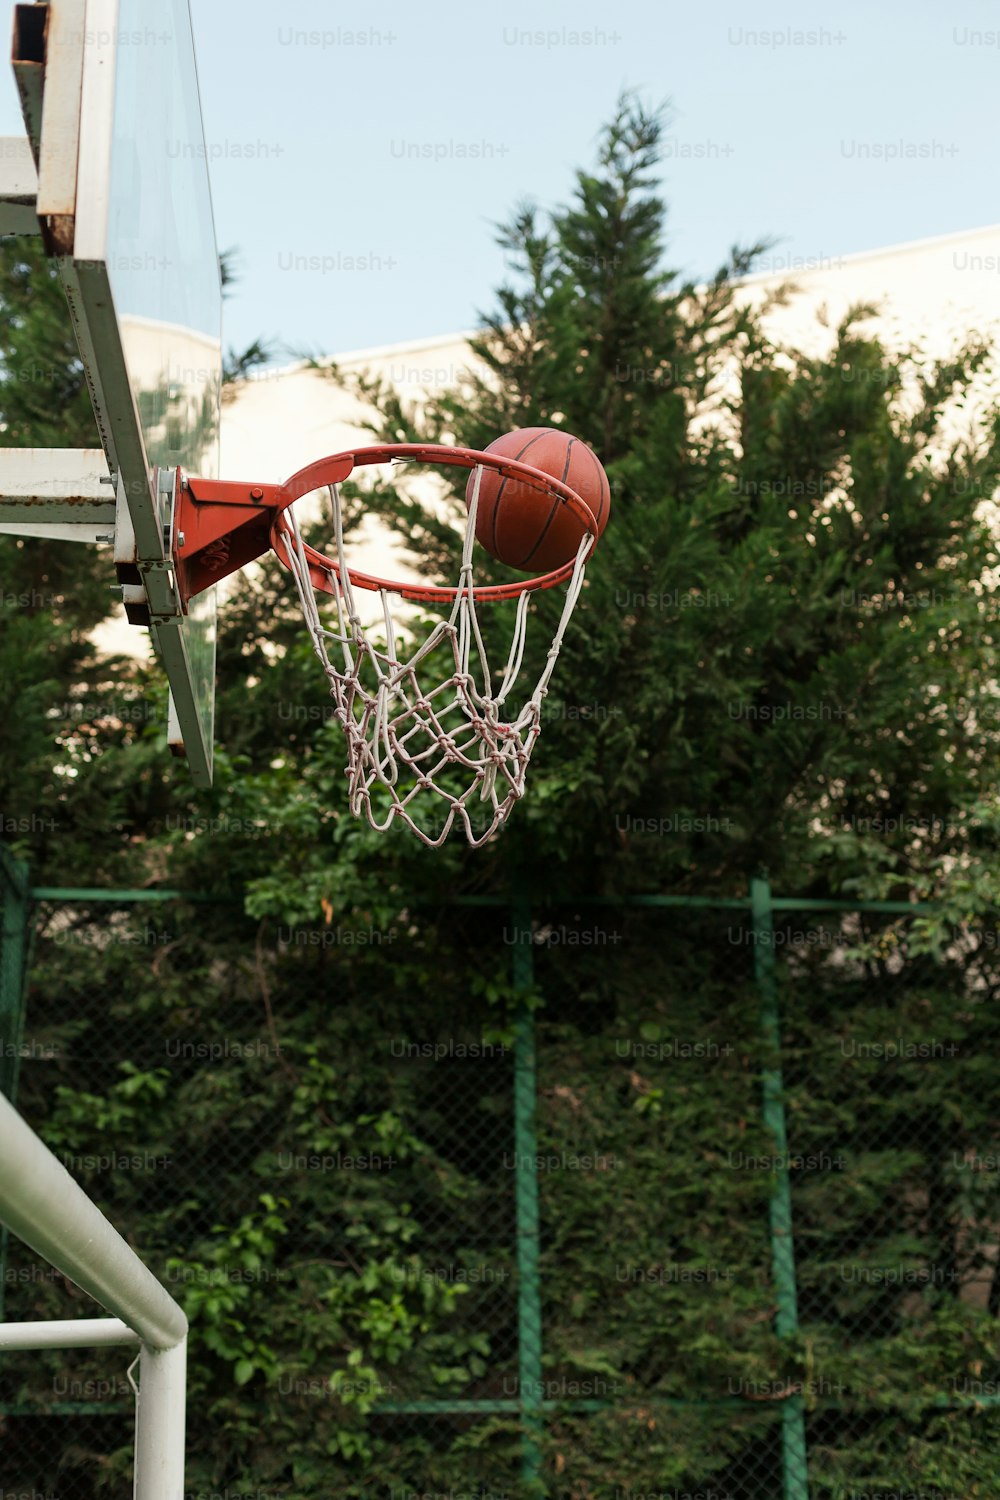 un ballon de basket traversant le filet d’un panier de basket-ball